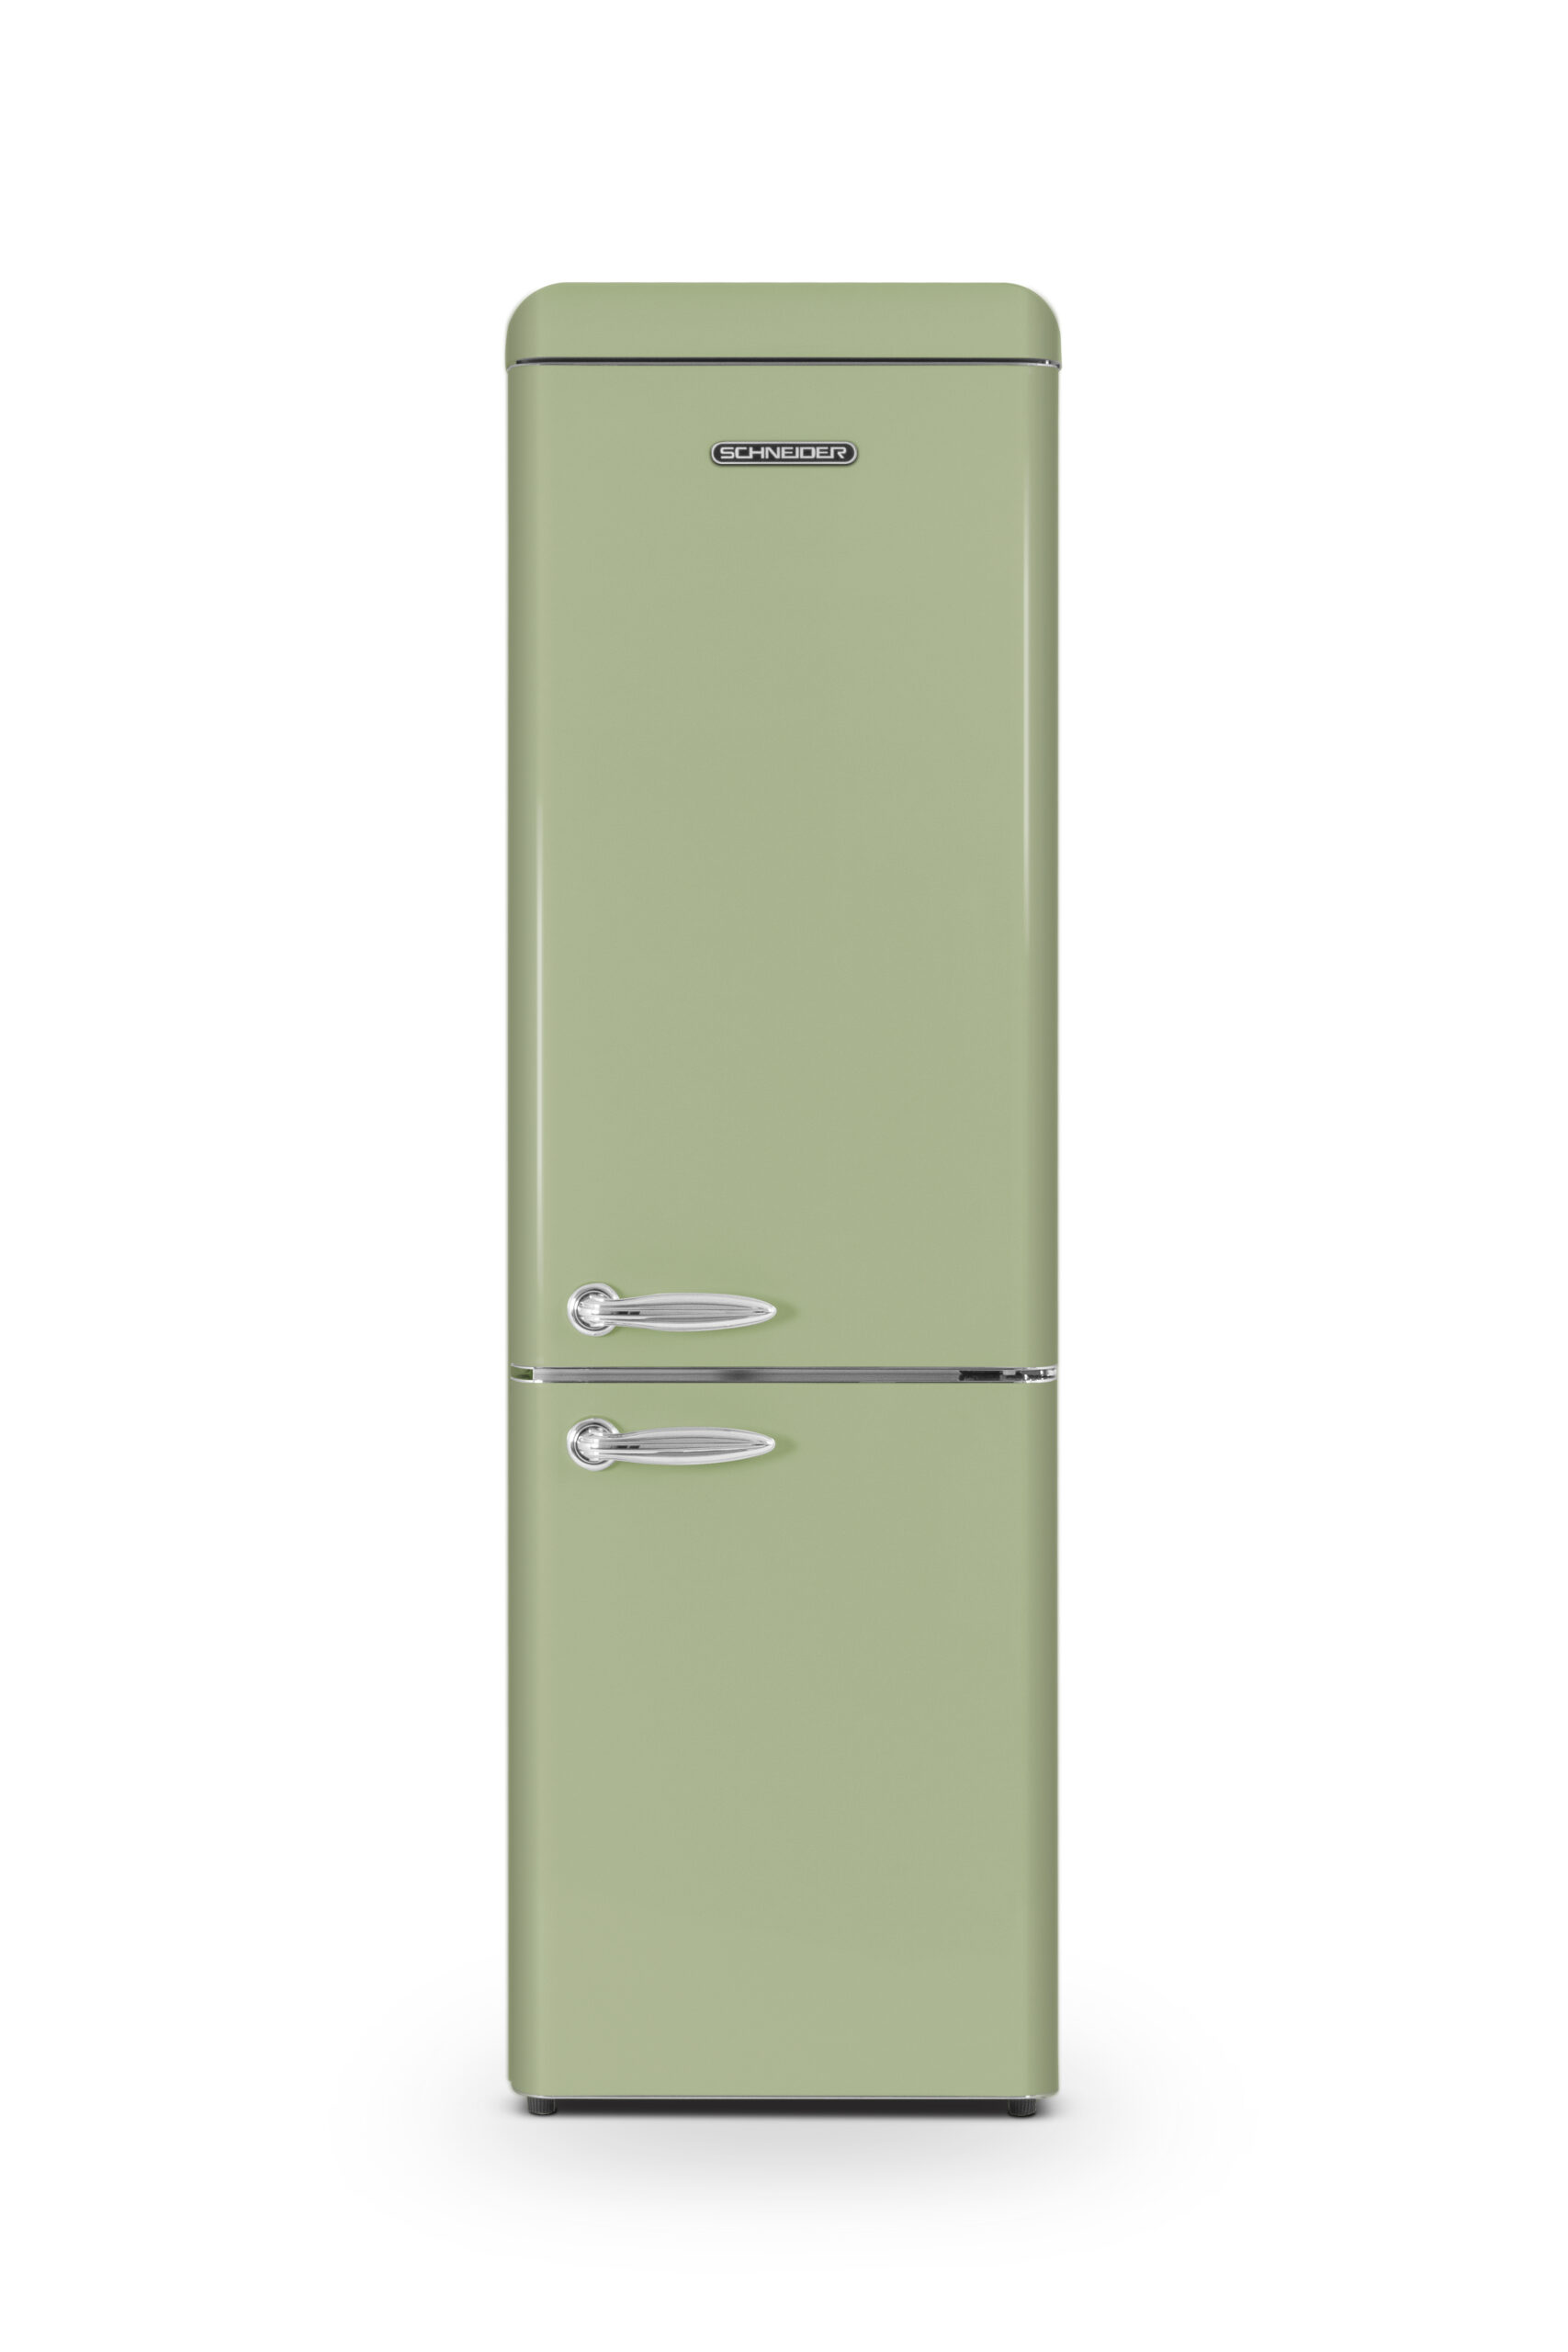 Réfrigérateur vintage combiné 249 L vert amande de Schneider - SCCB250VVA